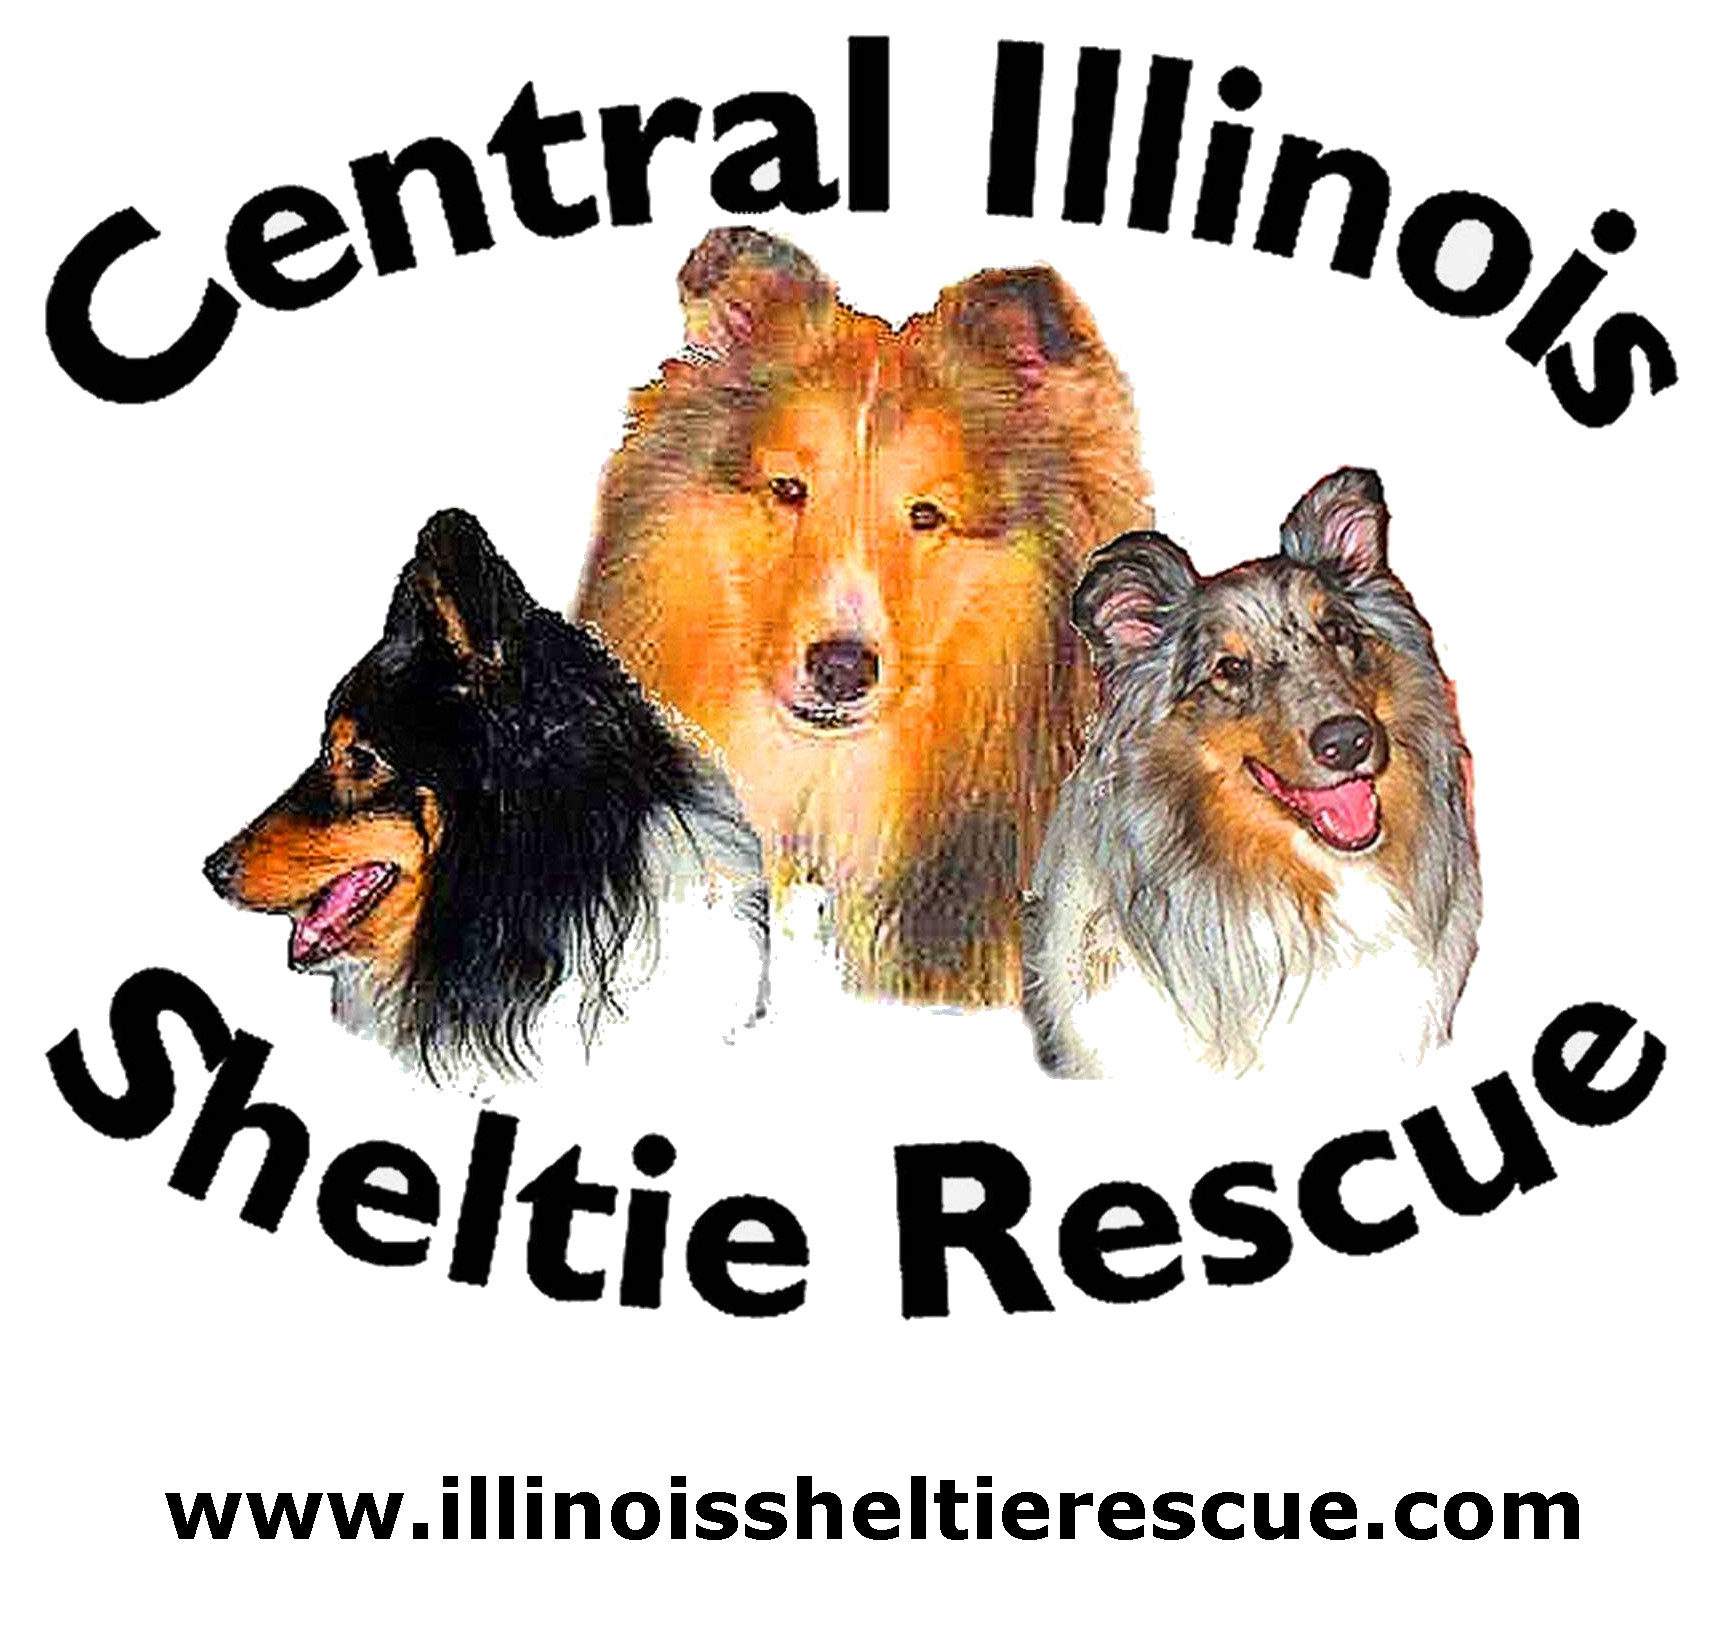 Central Illinois Sheltie Rescue